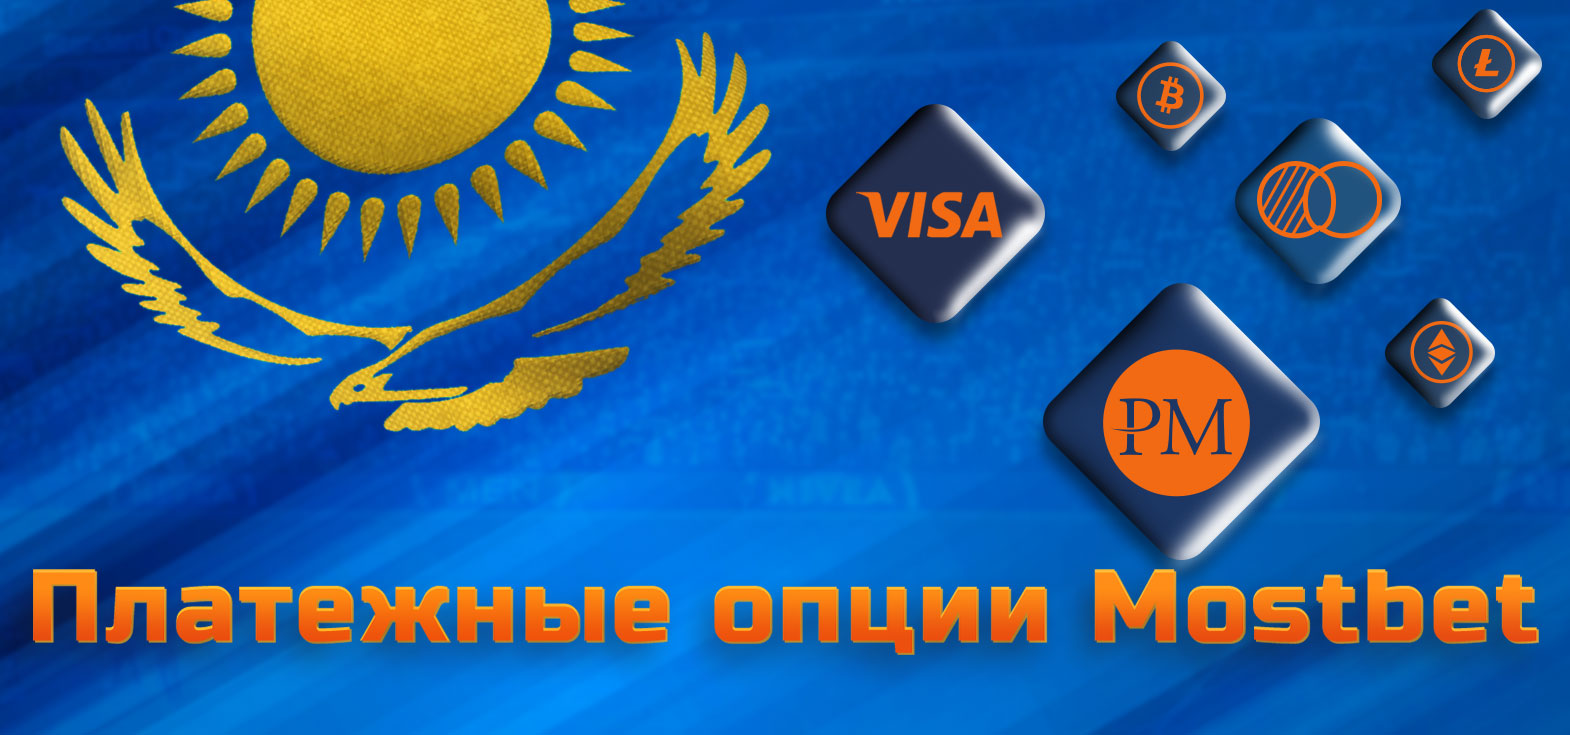 Все доступные платежные опции в БК и казино Mostbet в Казахстане.